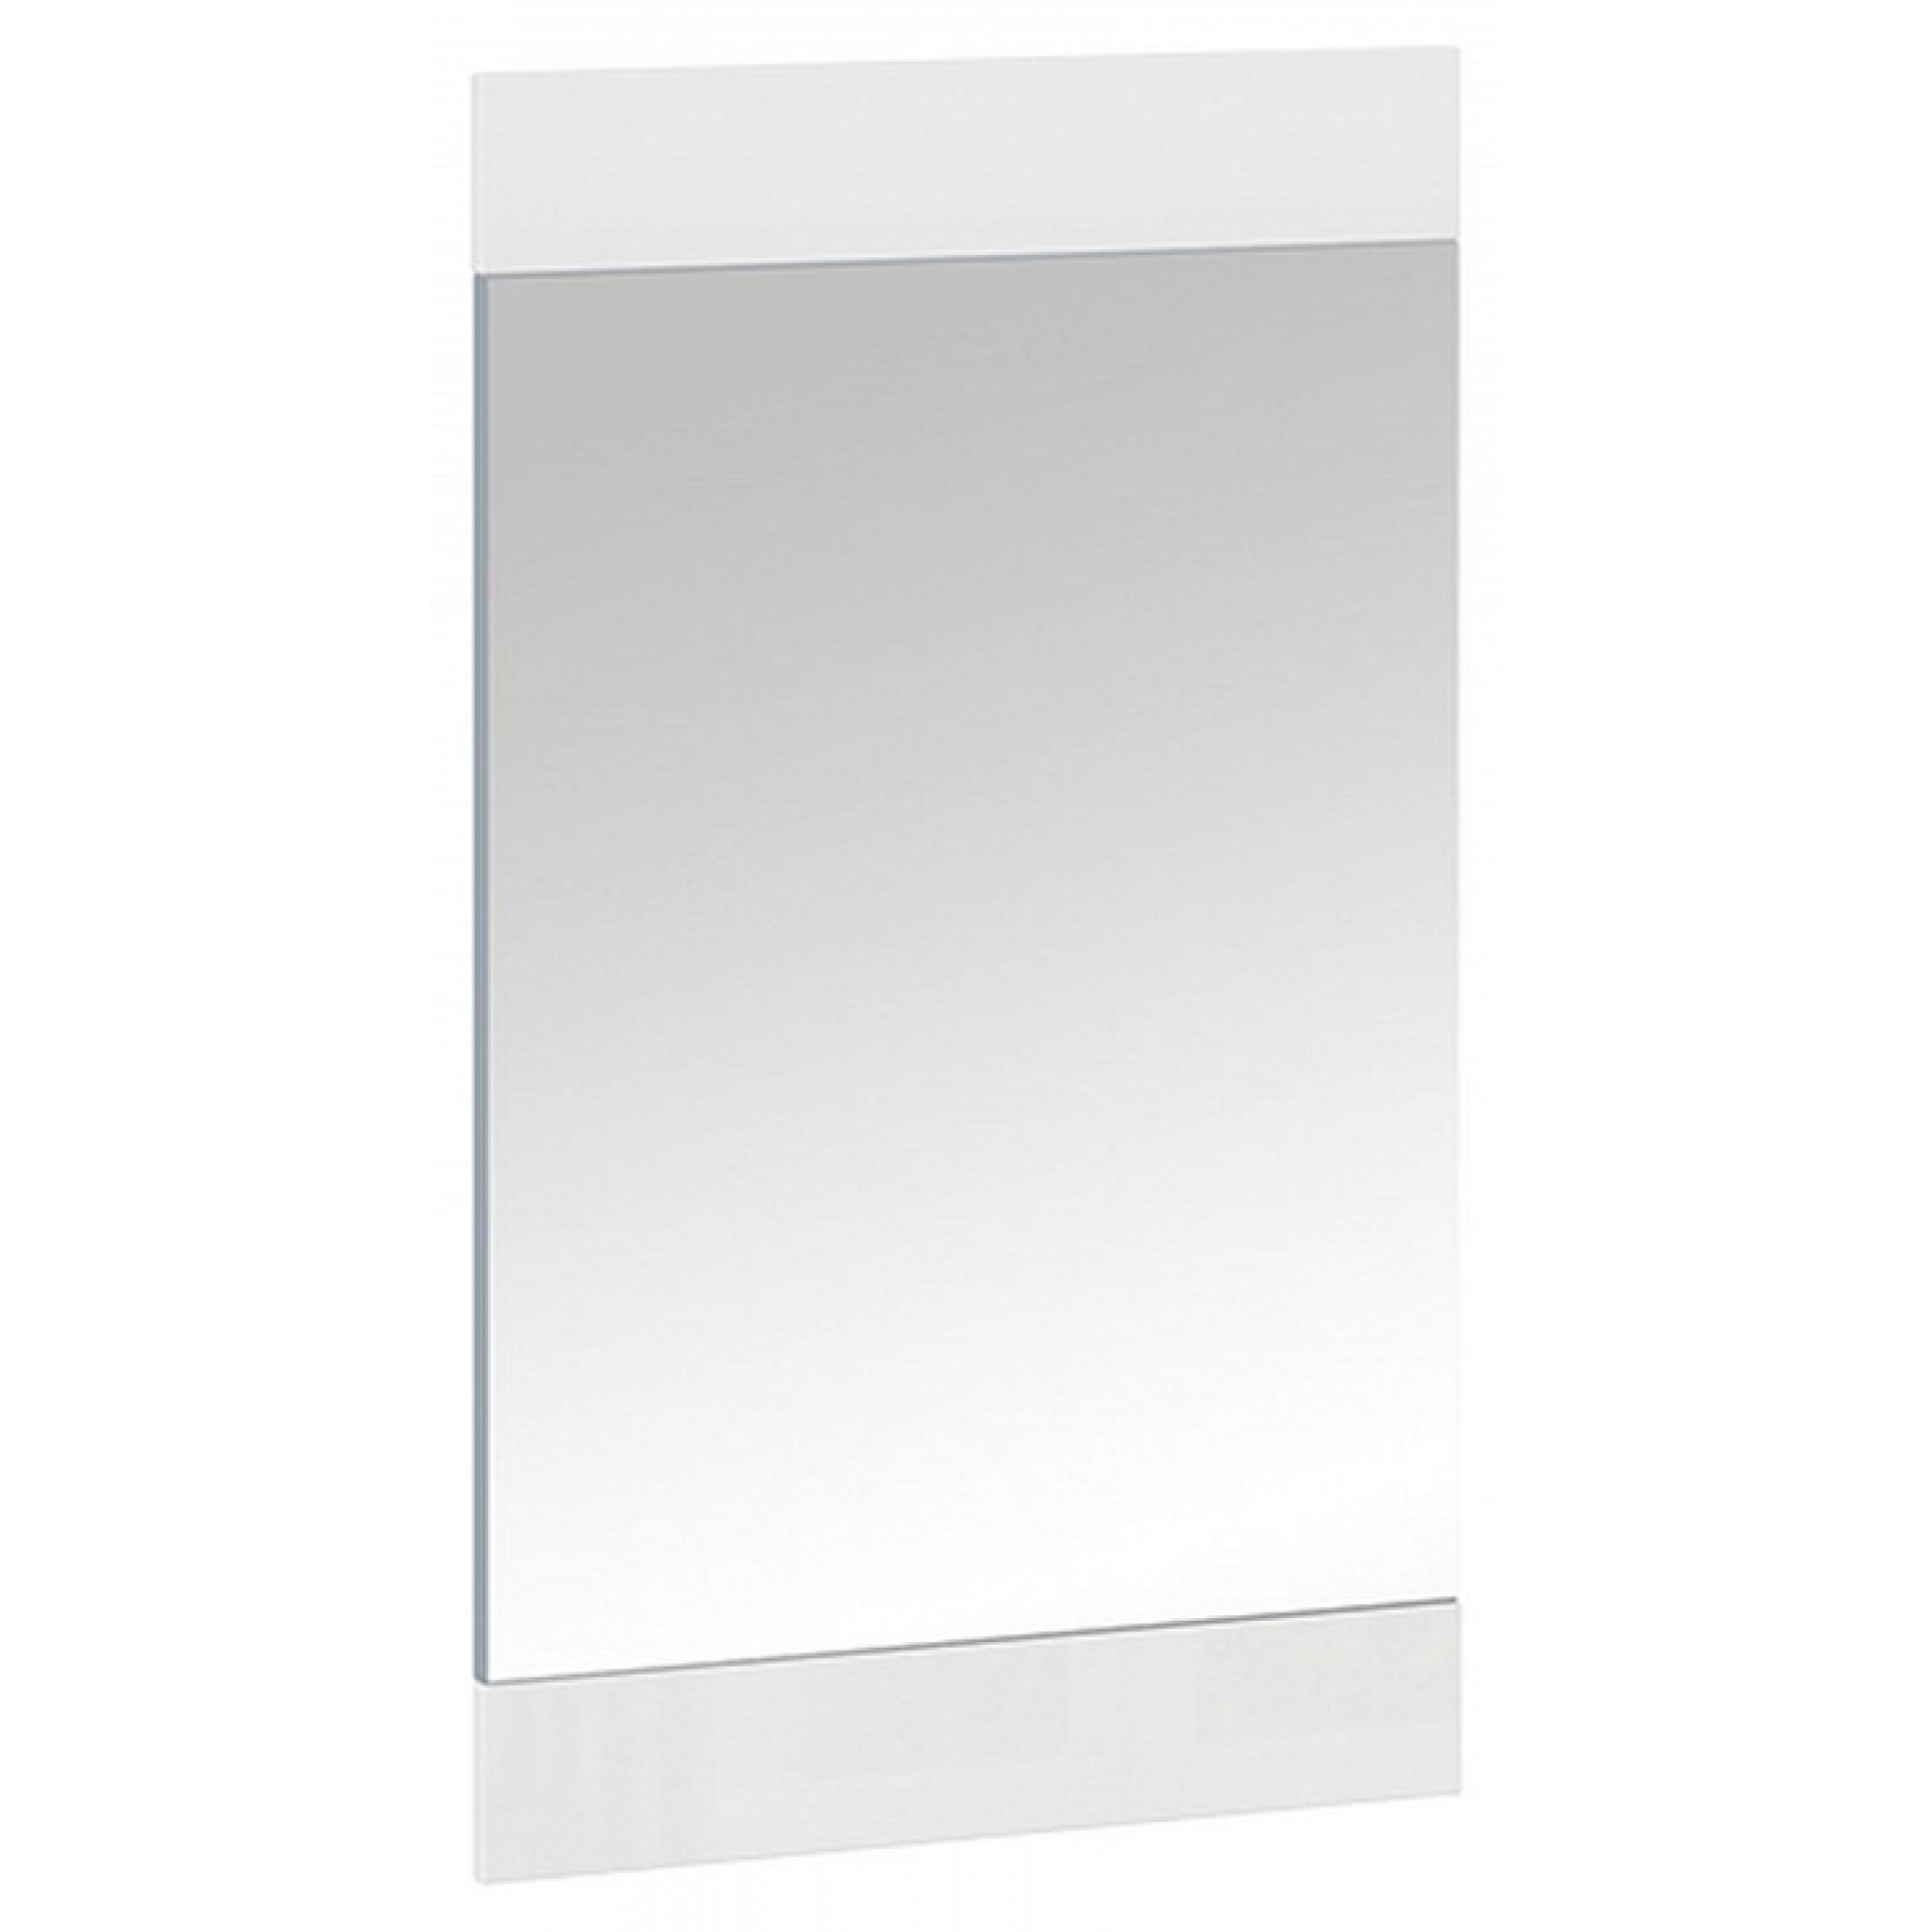 Зеркало настенное Фьюжн белый 540x20x900(TRI_219312)